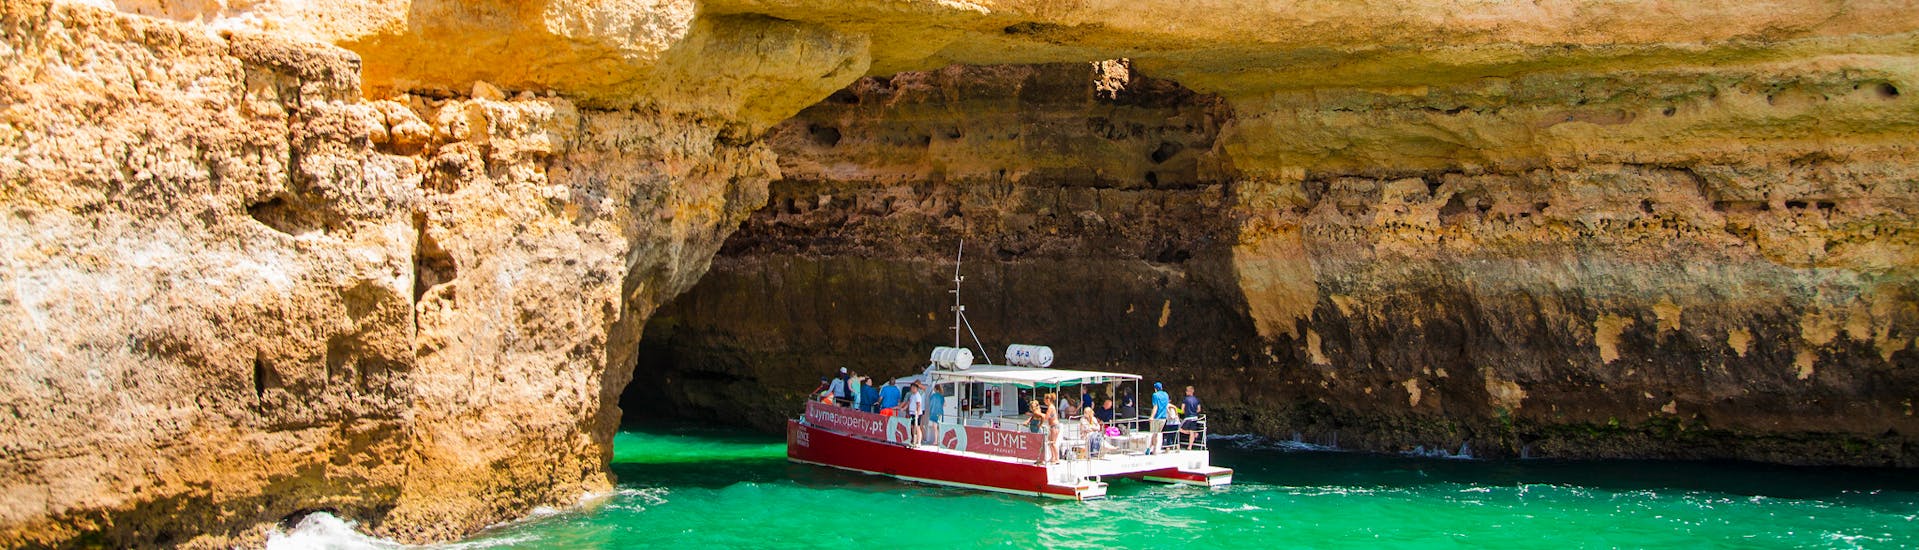 Plusieurs bateaux visitant une grotte au bord de l'eau pendant une balade en bateau.